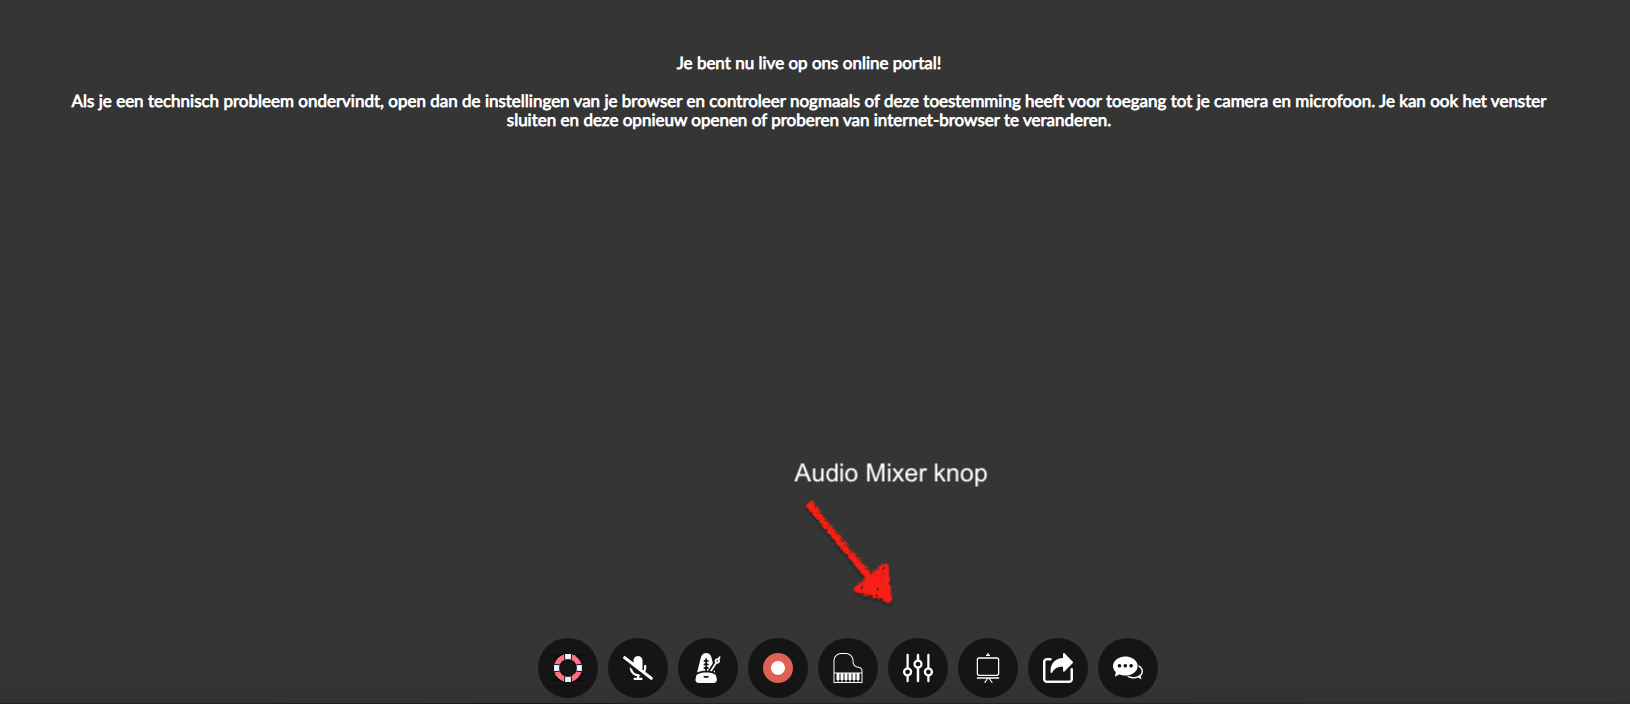 Audio mixer knop